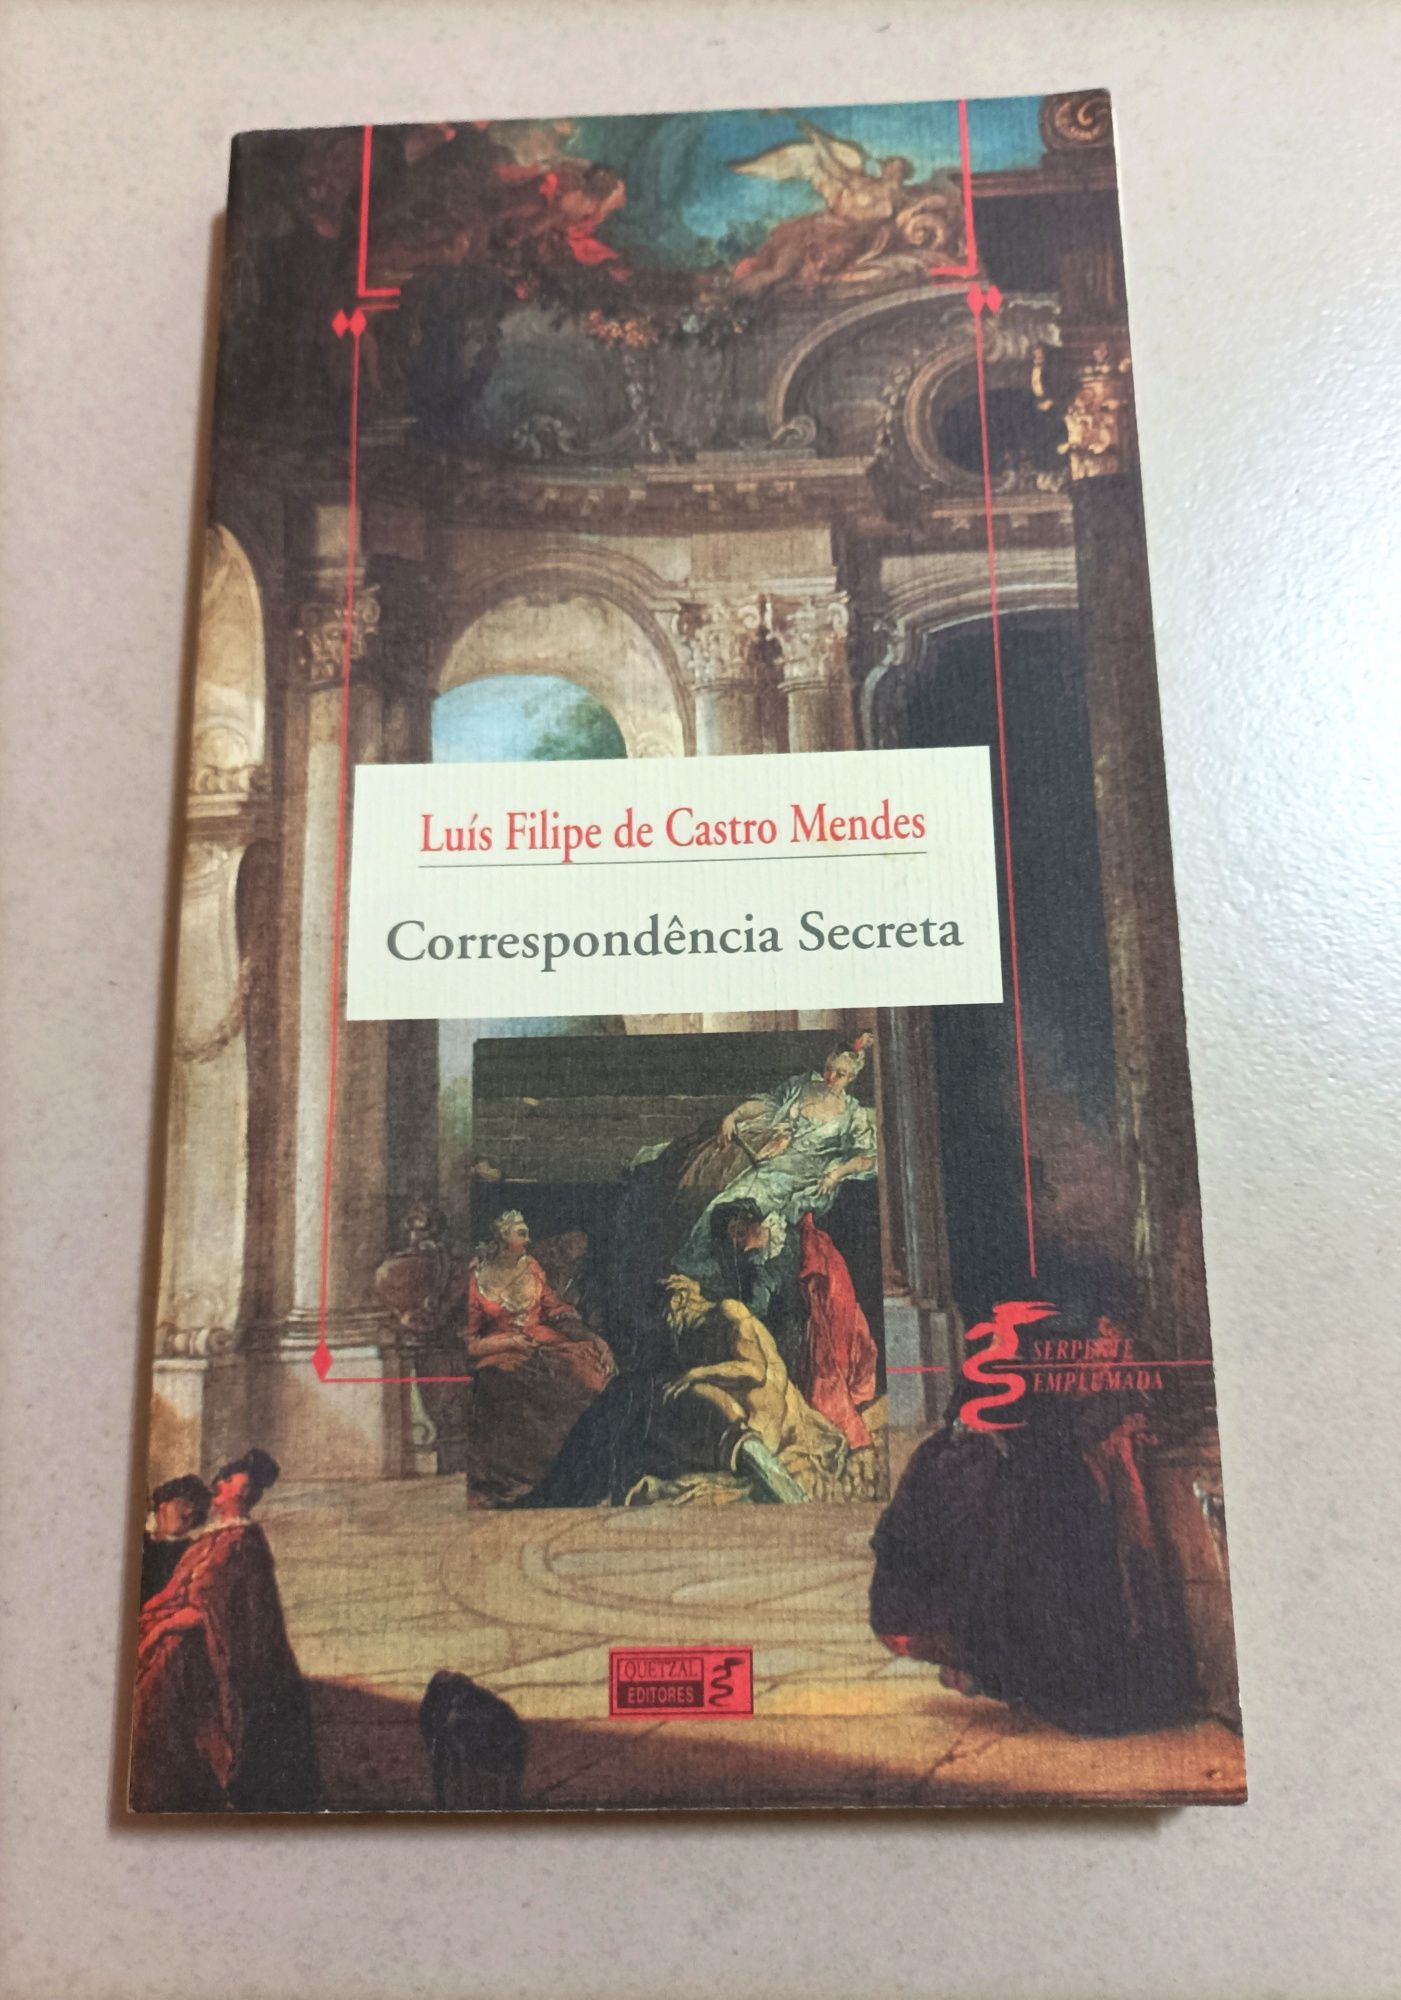 Livros de Autores Consagrados (Gabriel Garcia Márquez, Laura Esquivel)